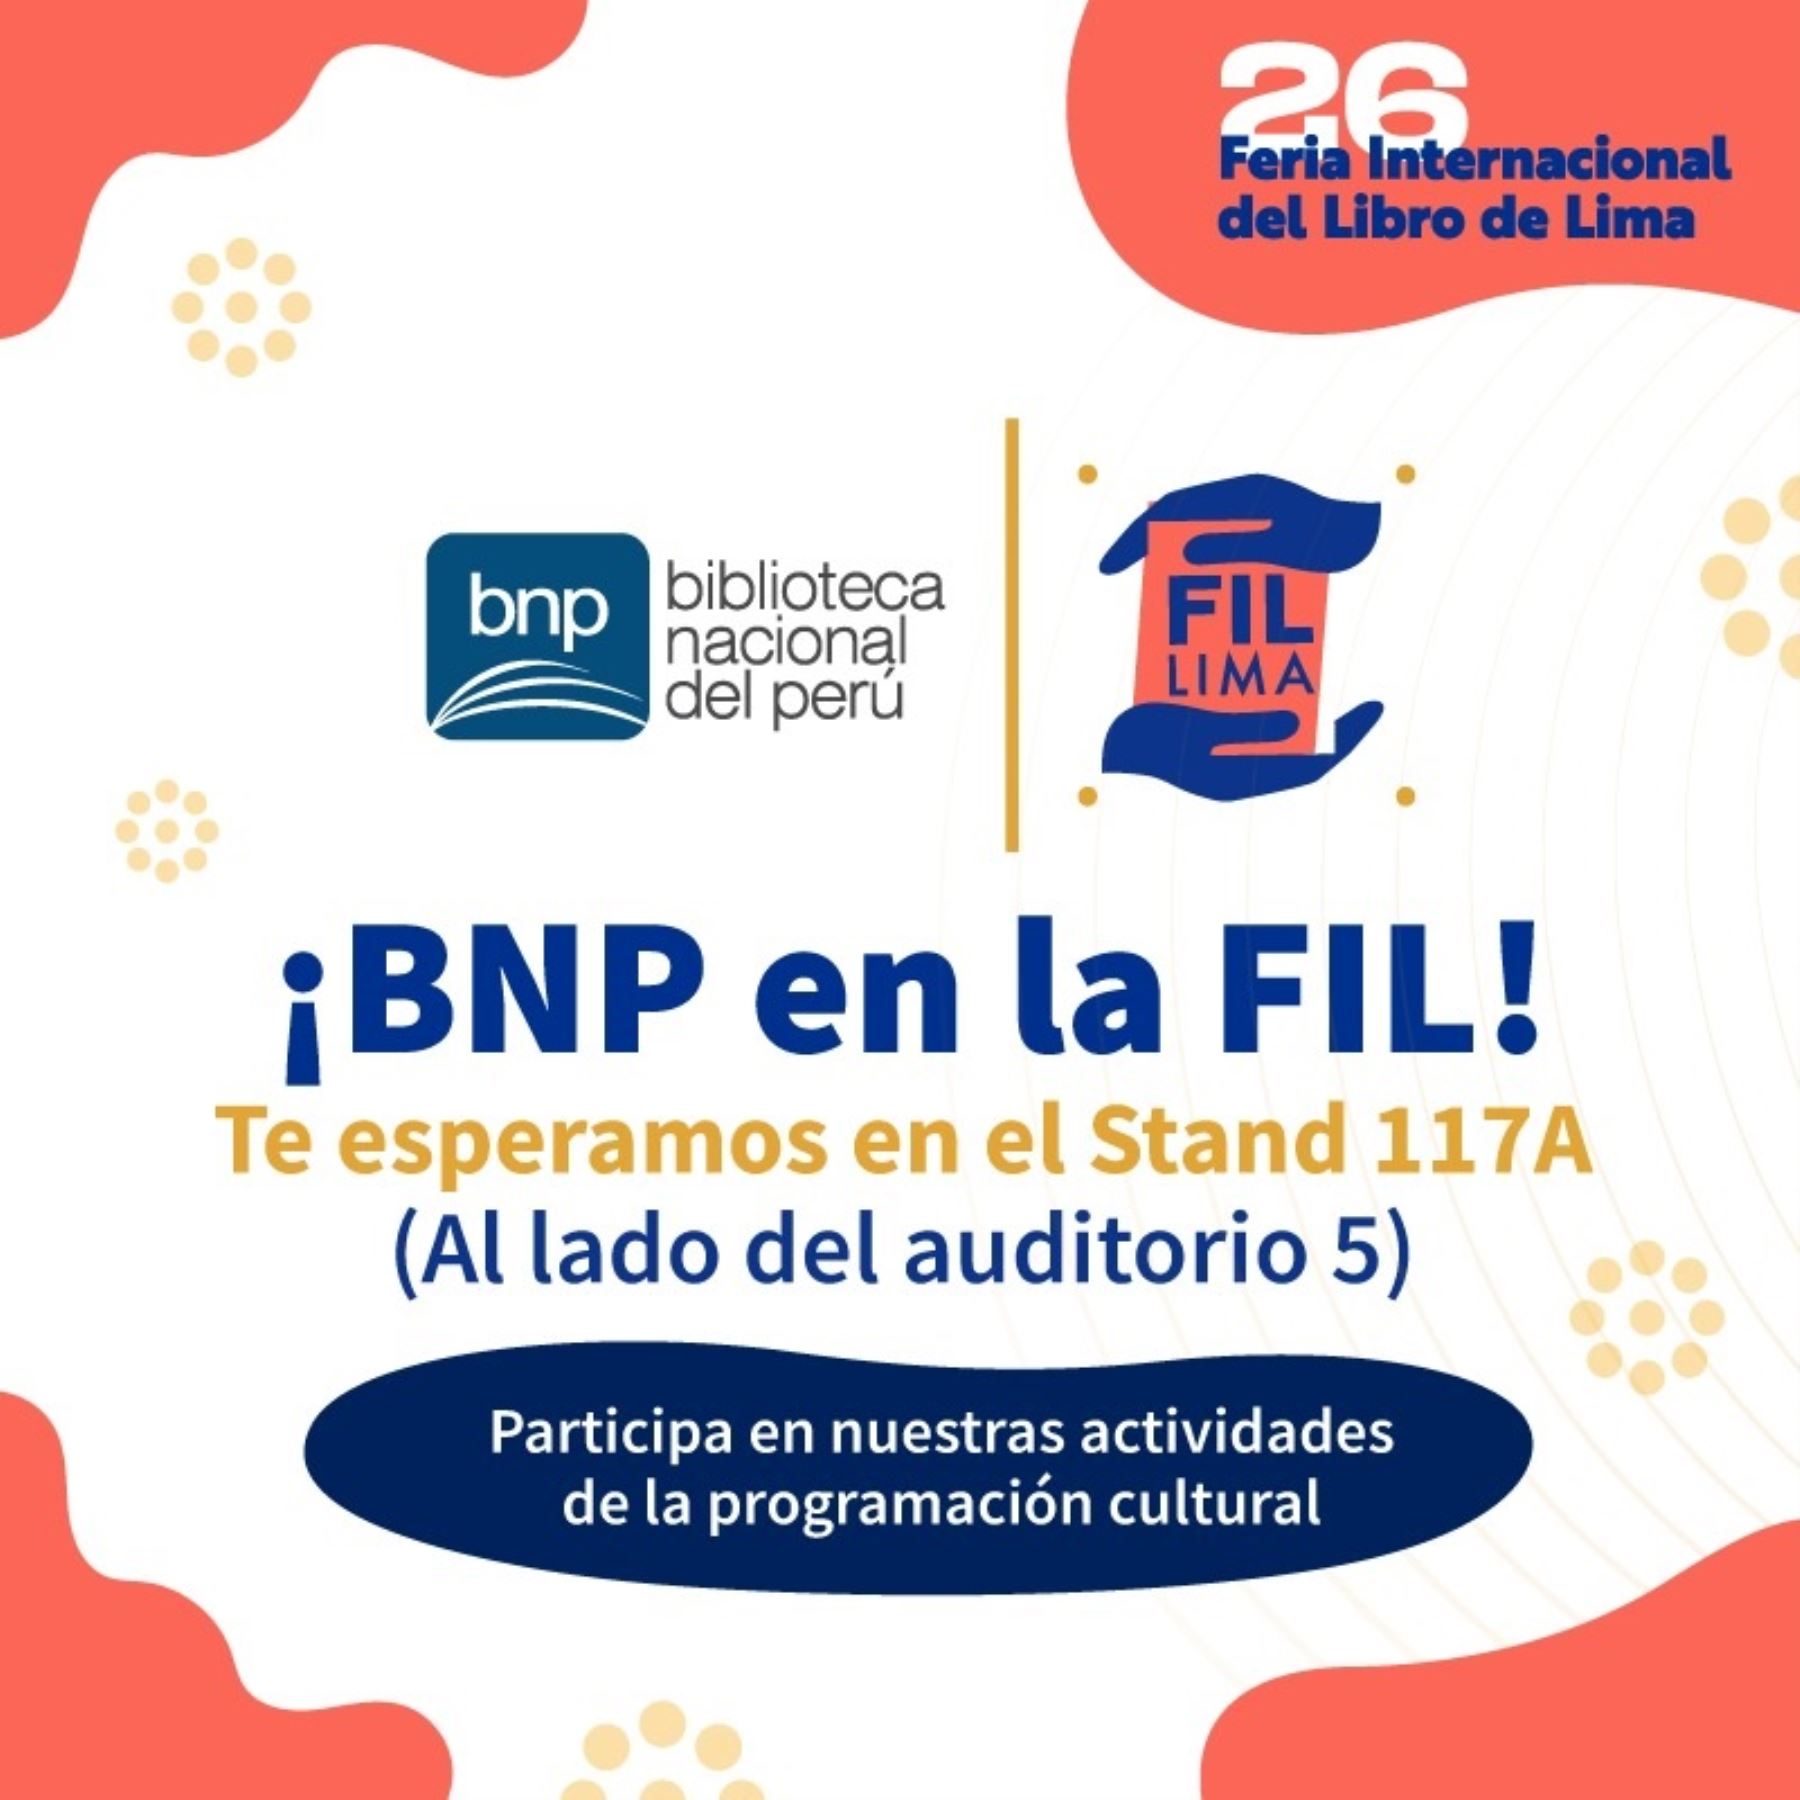 BNP abre programación cultural de la 26ª FIL LIMA 2022